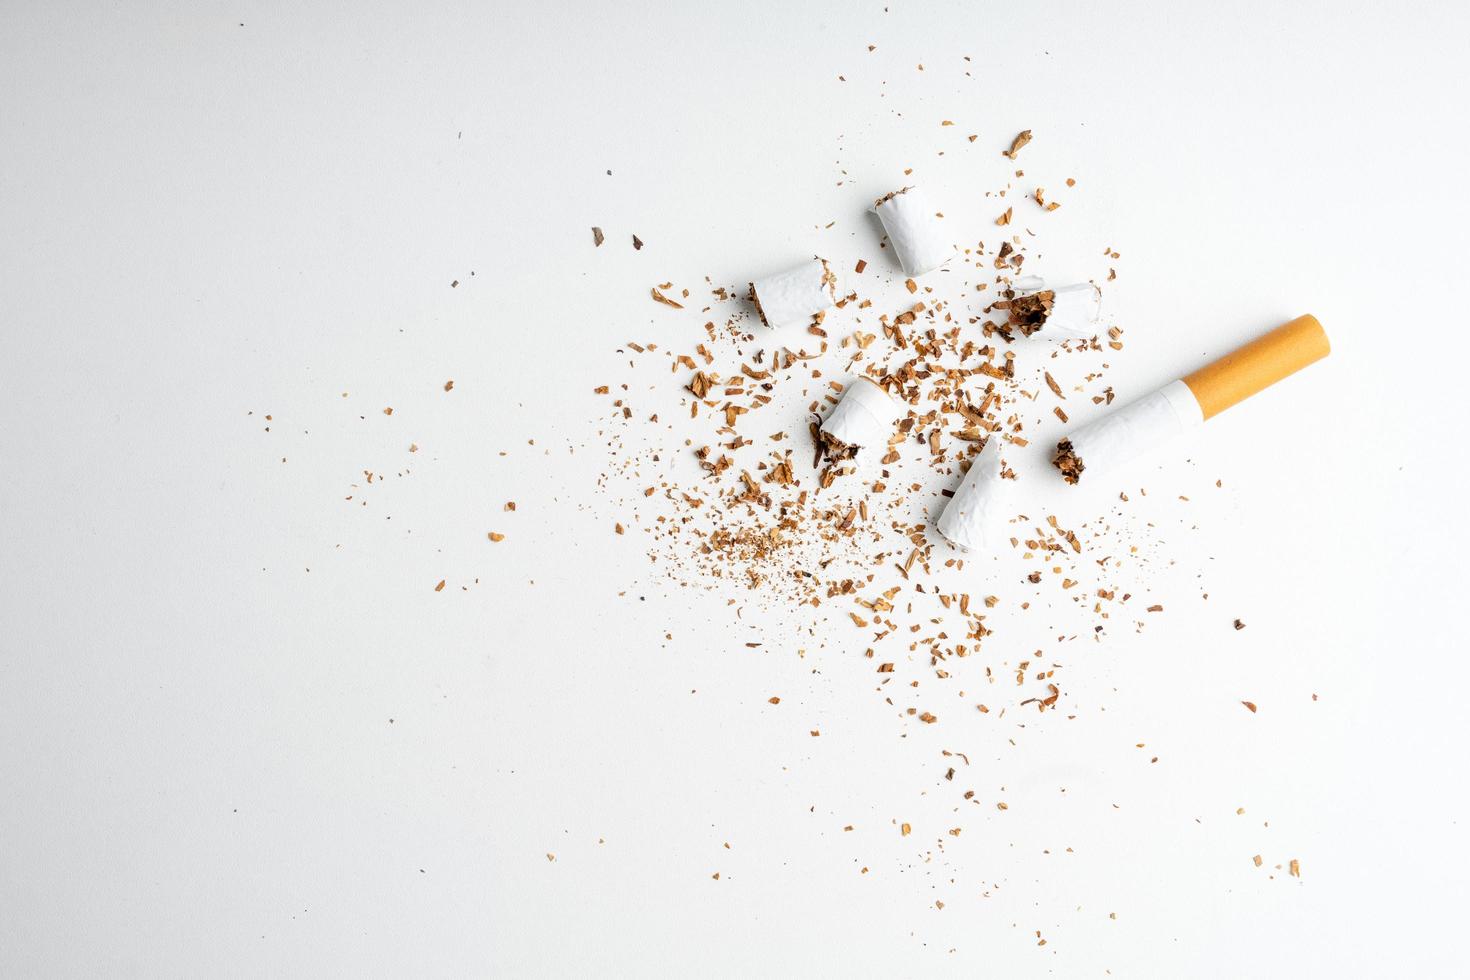 cigarrillo roto sobre fondo blanco con espacio de copia, día mundial sin tabaco foto